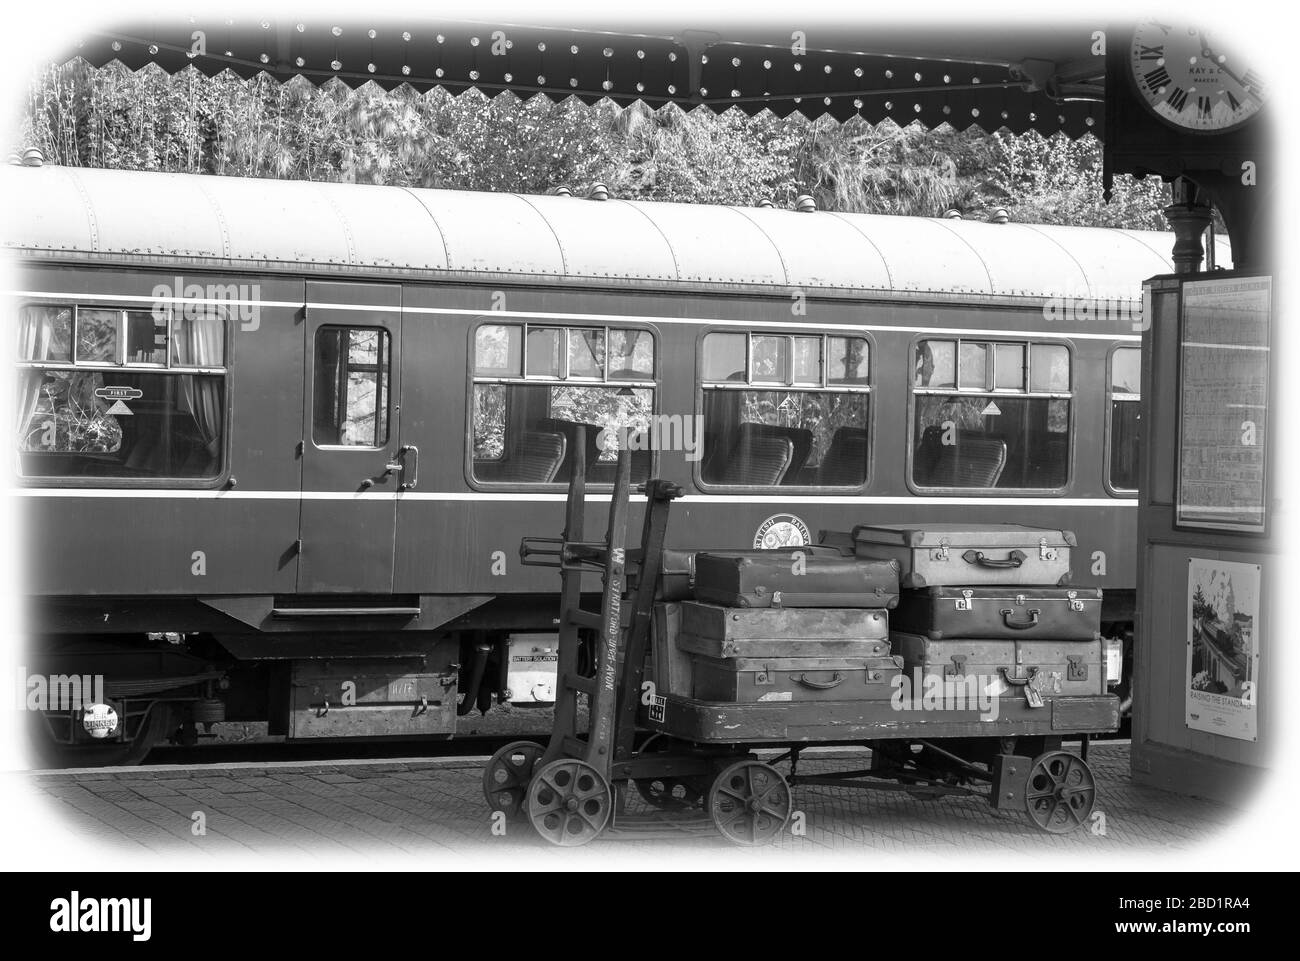 Vista mono bianco e nero, piattaforma della stazione ferroviaria vintage di Bewdley, Severn Valley Heritage Railway, Regno Unito. Bagagli vintage, valigie sul carrello per bagagli. Foto Stock